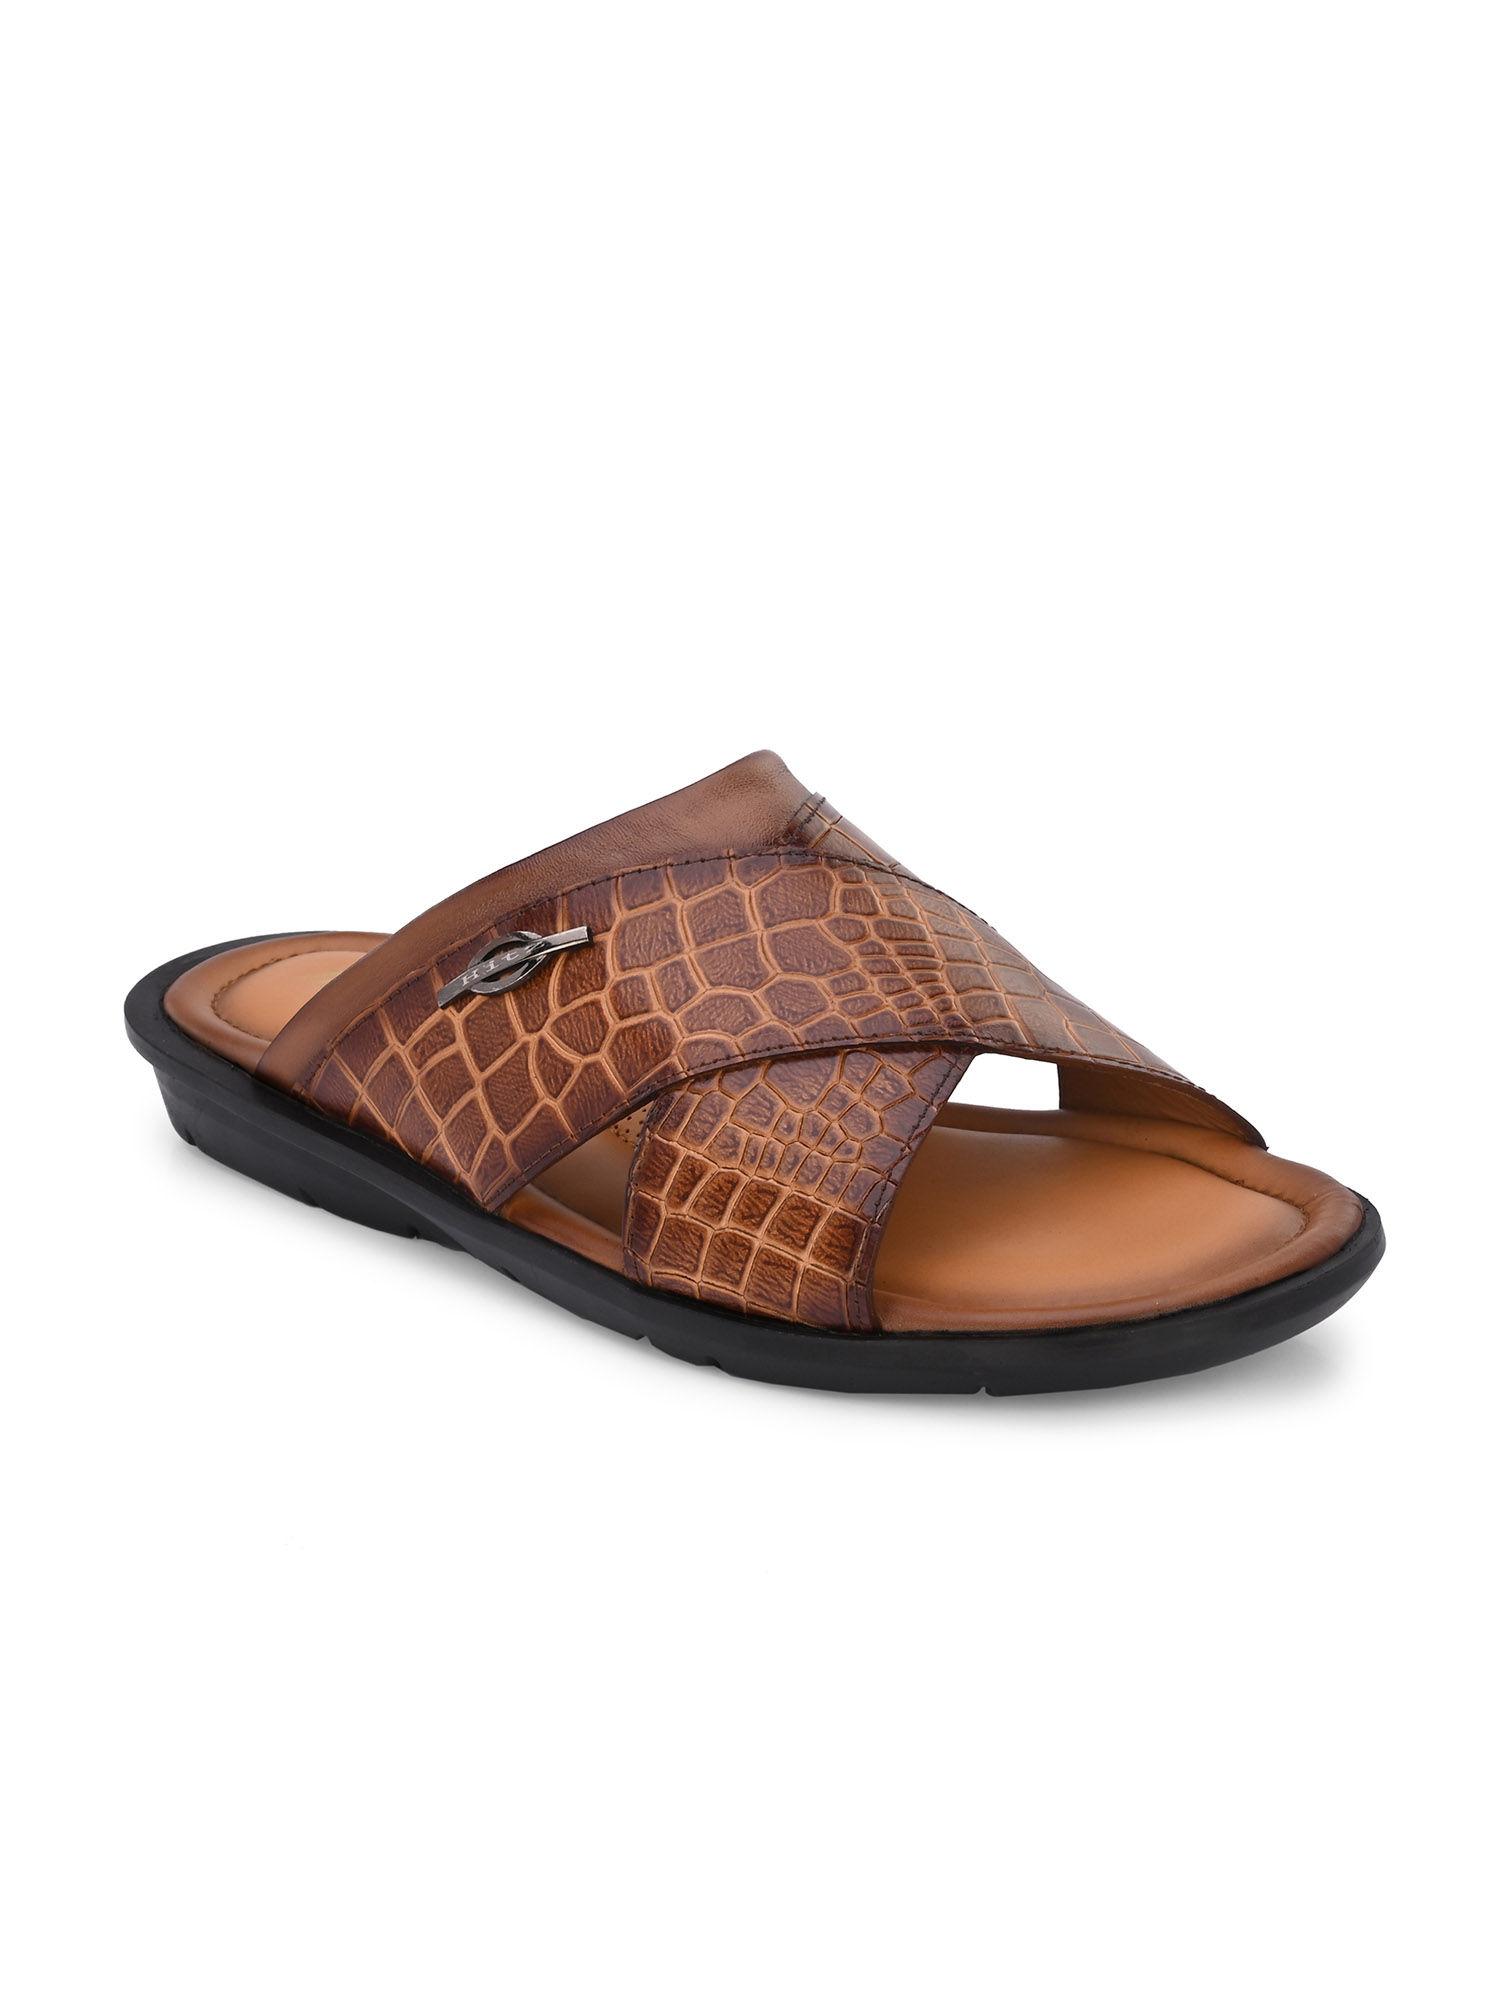 men's tan leather open toe slippers